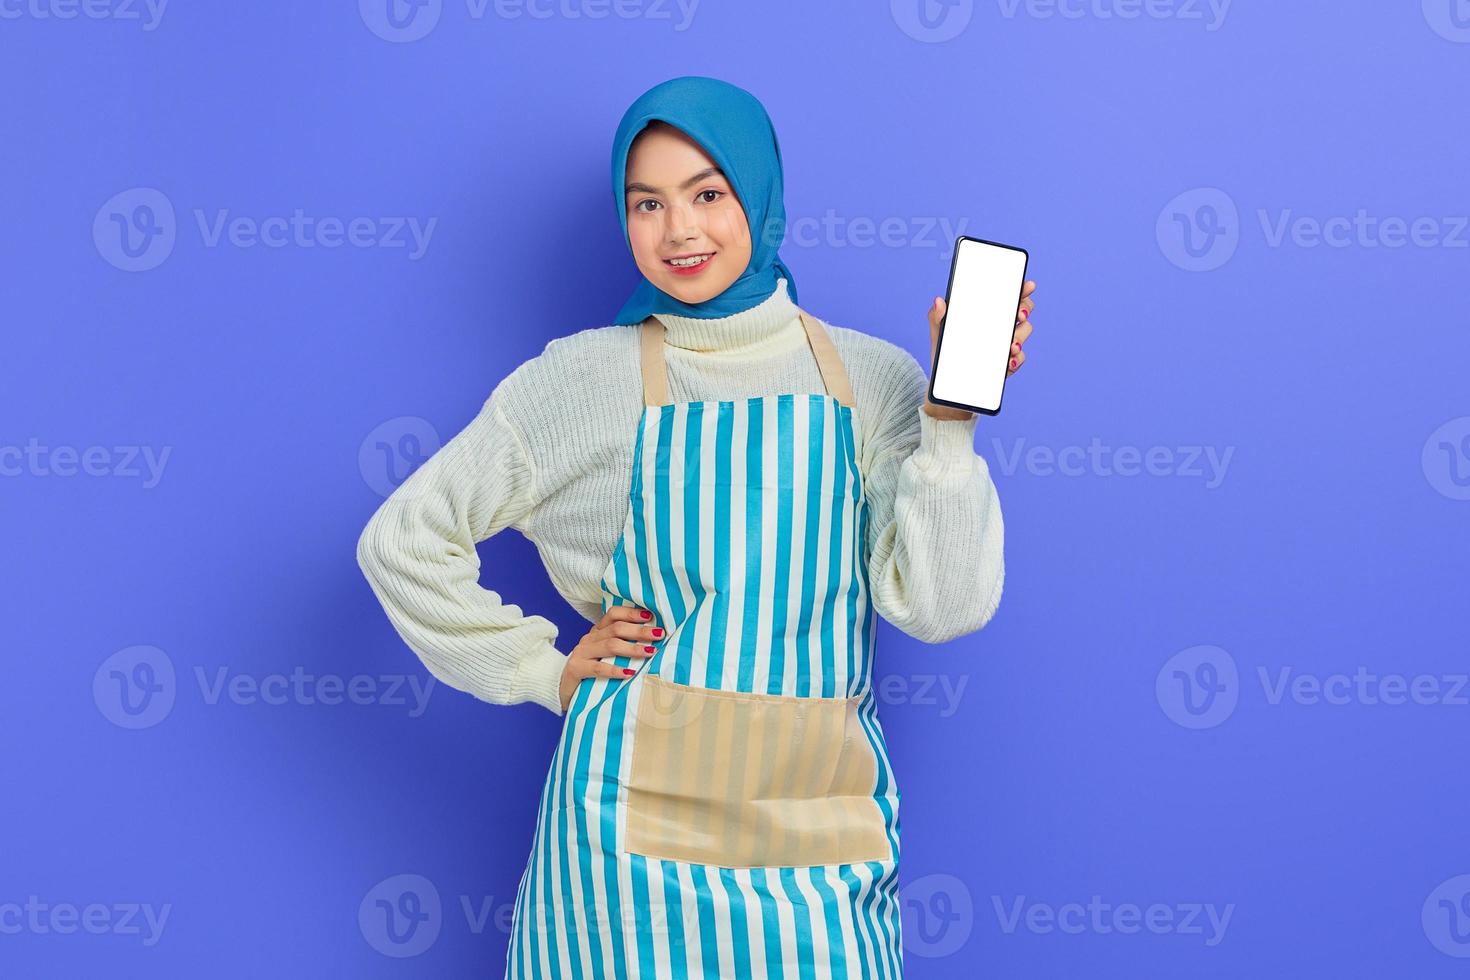 portret van lachende jonge aziatische moslimvrouw die hijab en schort draagt met een leeg scherm mobiele telefoon geïsoleerd op een paarse achtergrond. mensen huisvrouw moslim lifestyle concept foto